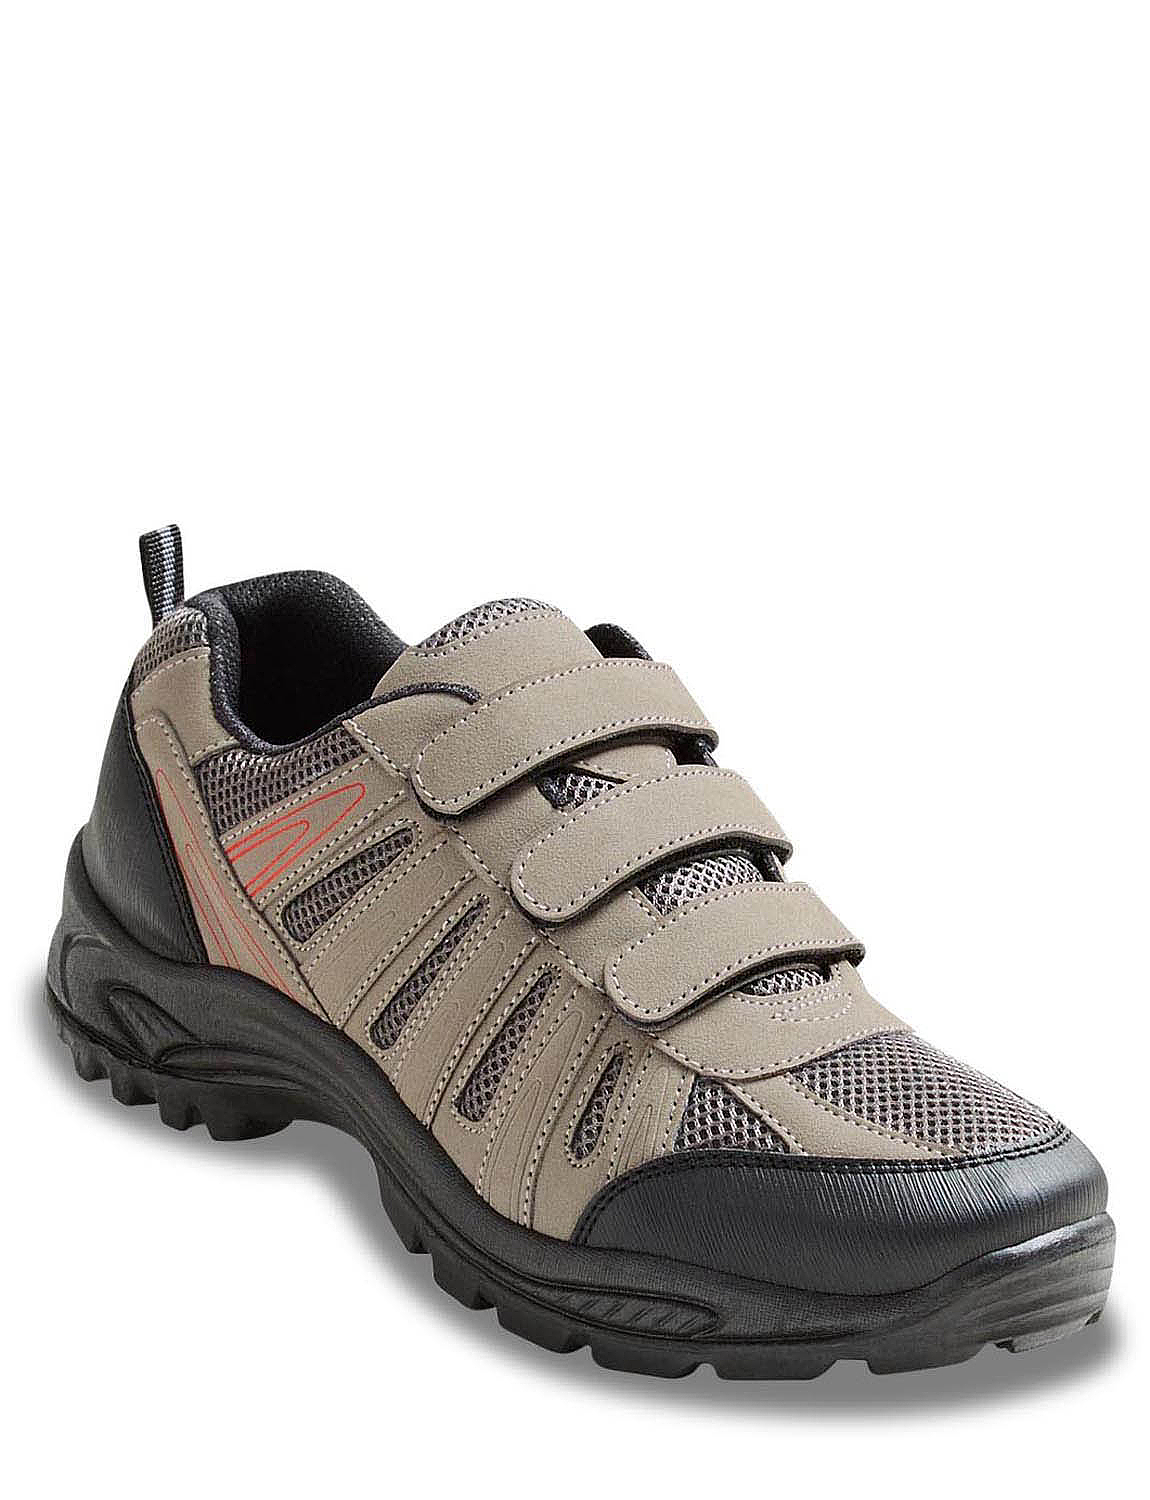 Propét M5502 Connelly Strap|wide fit mens walking shoe|Velcro Strap